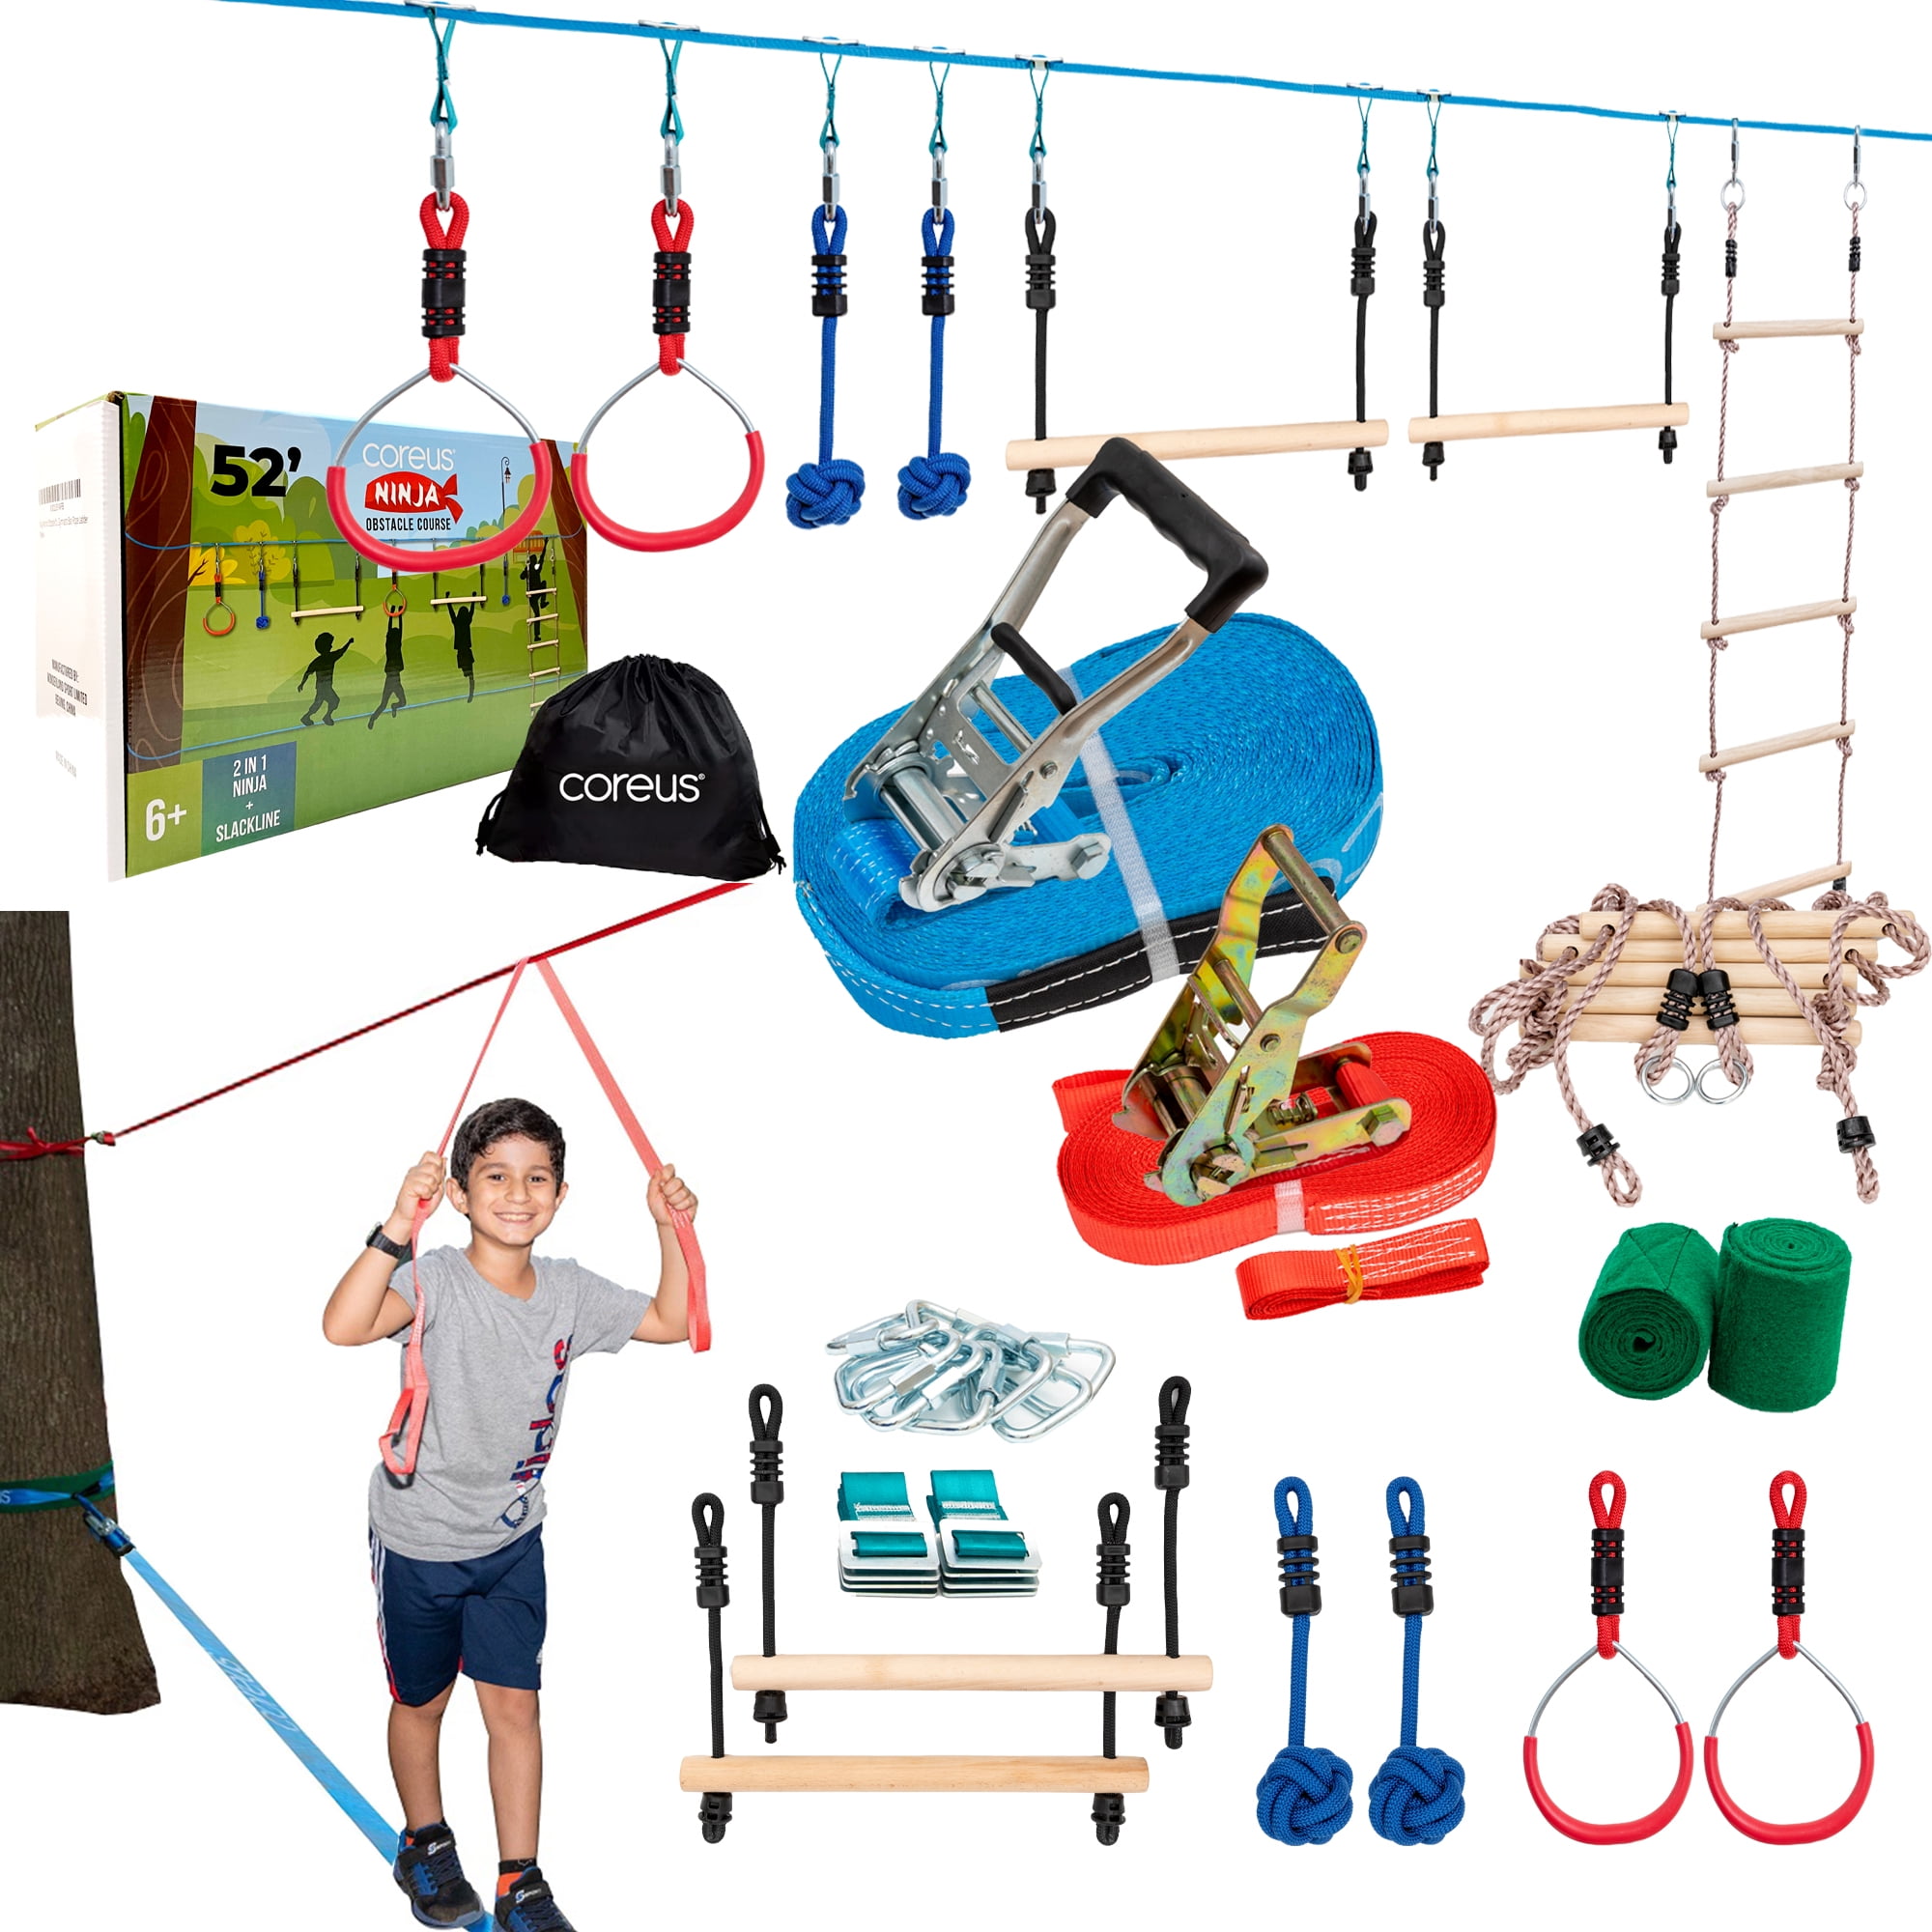 Details about   Ninja Warrior Kids Adult Obstacle Course Kit Sport Competition Slackline Set US 